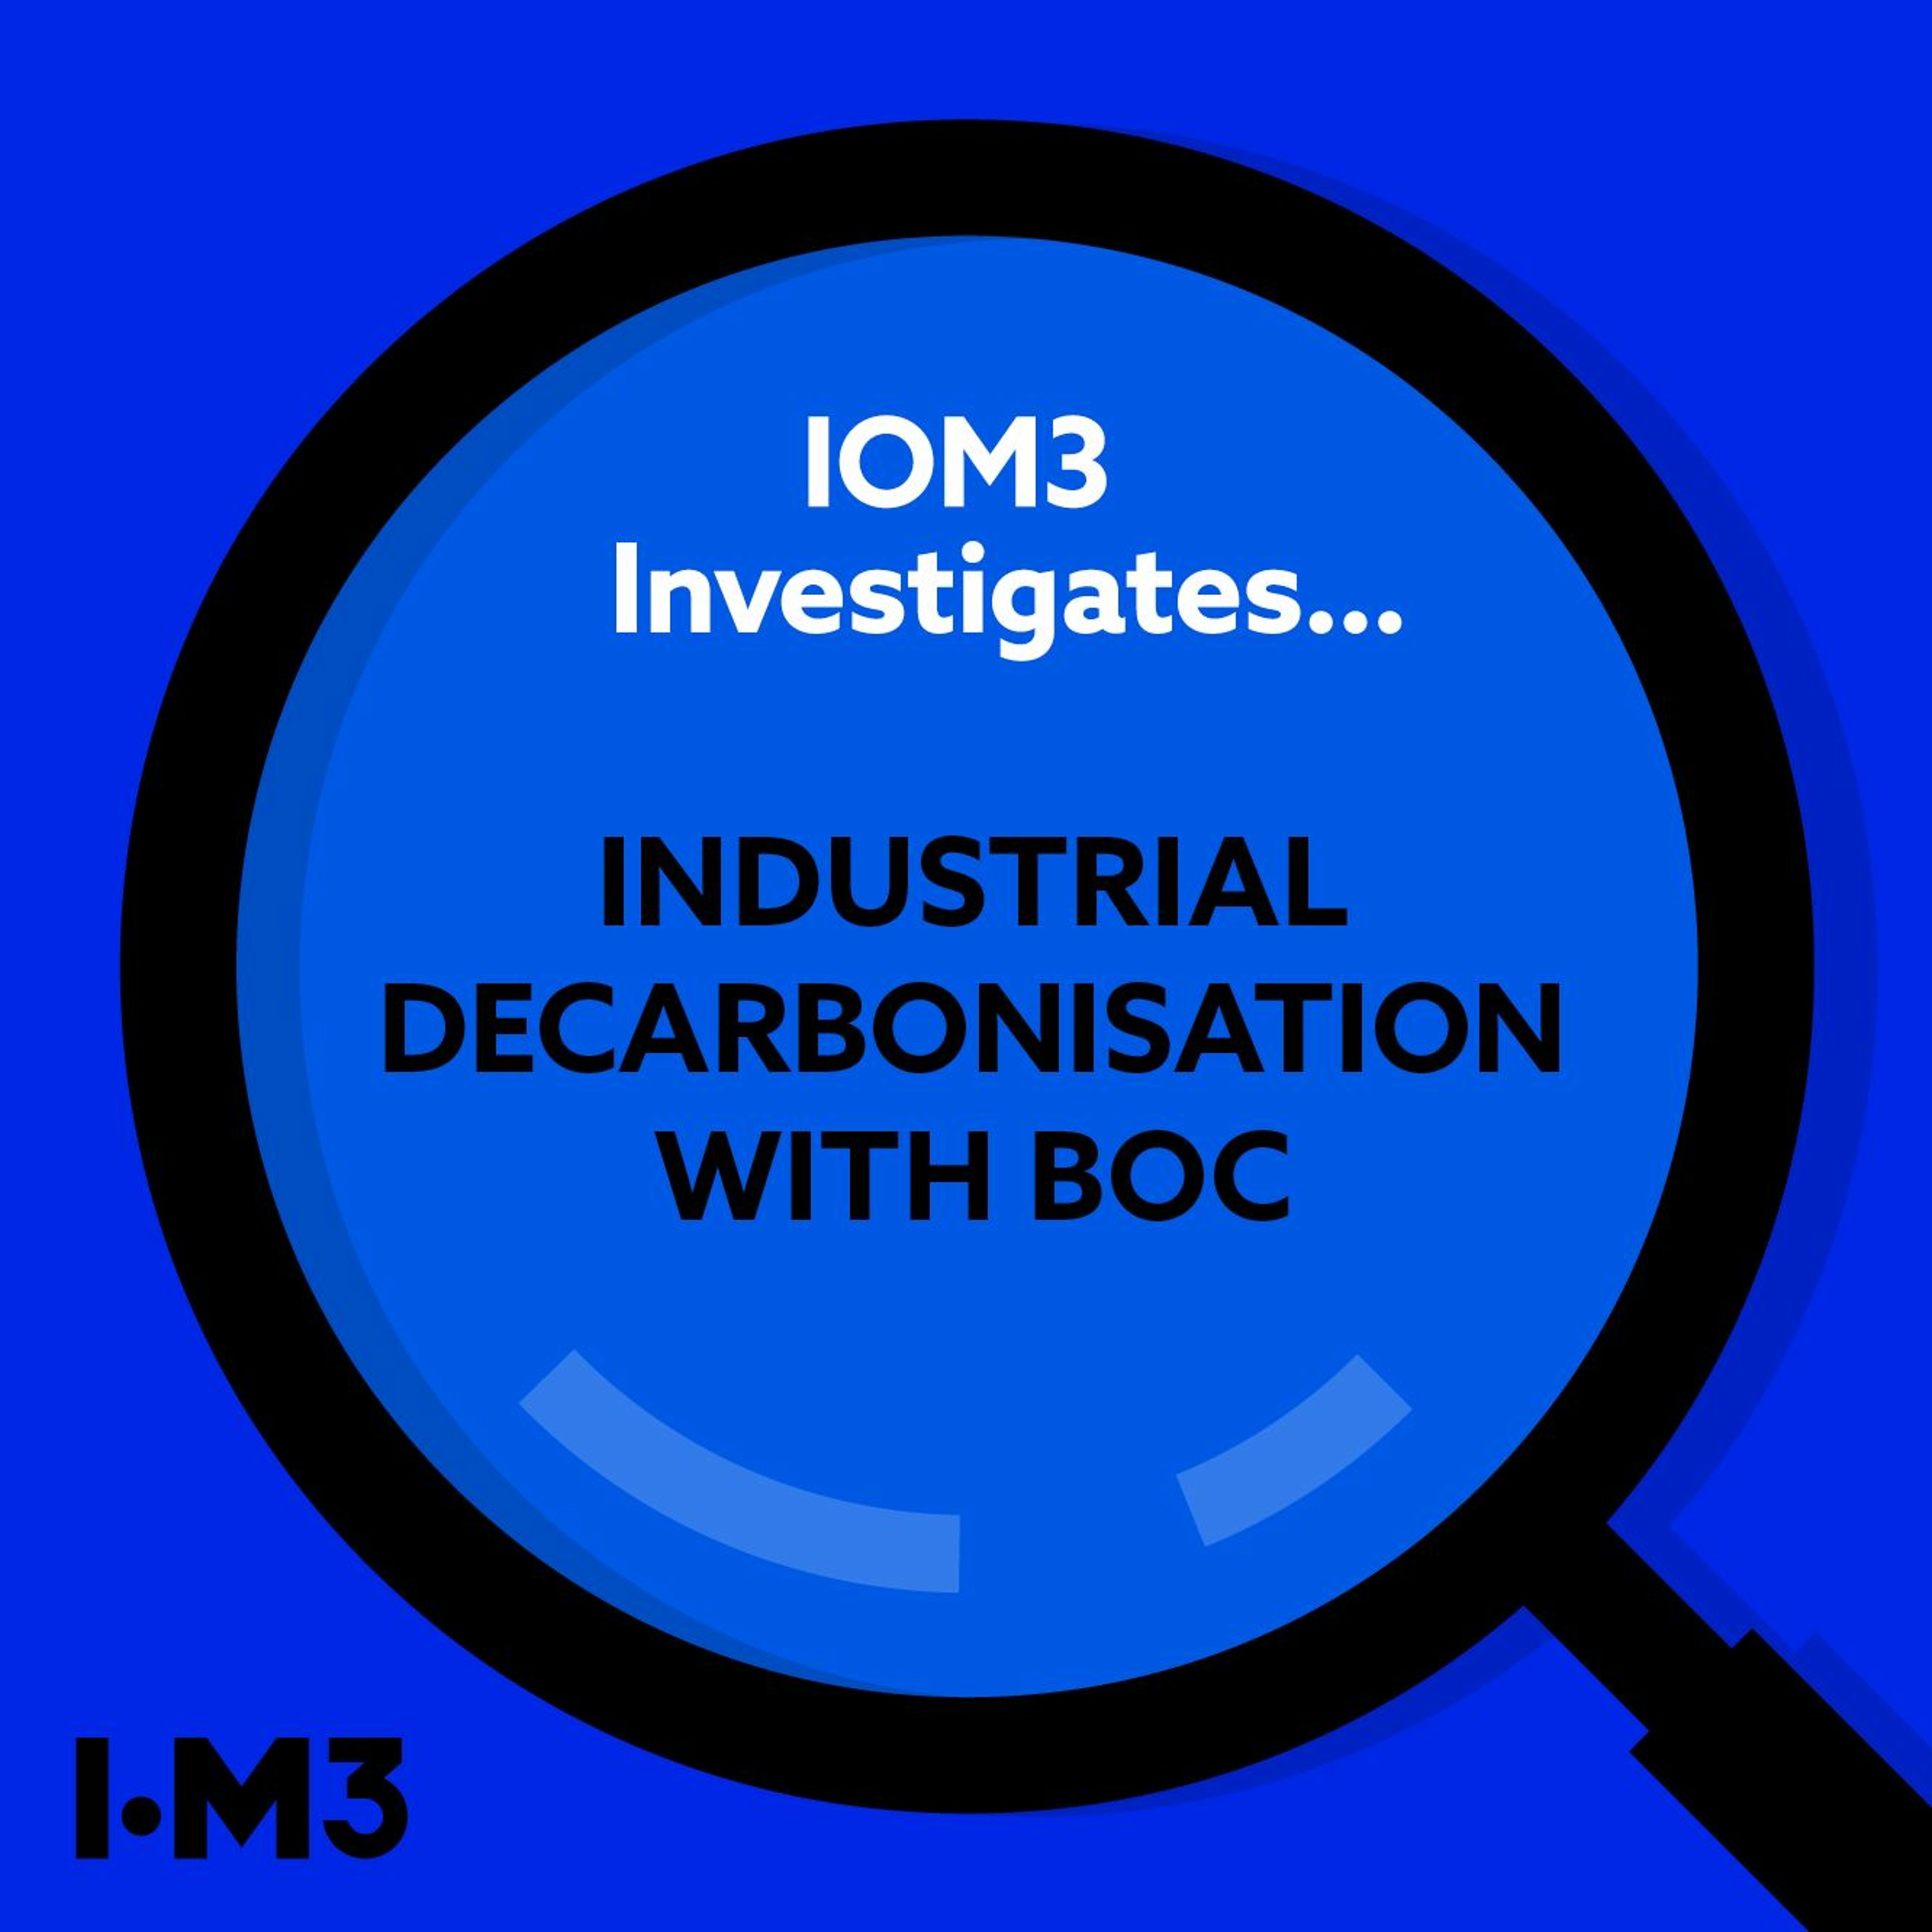 IOM3 Investigates... Industrial decarbonisation with BOC